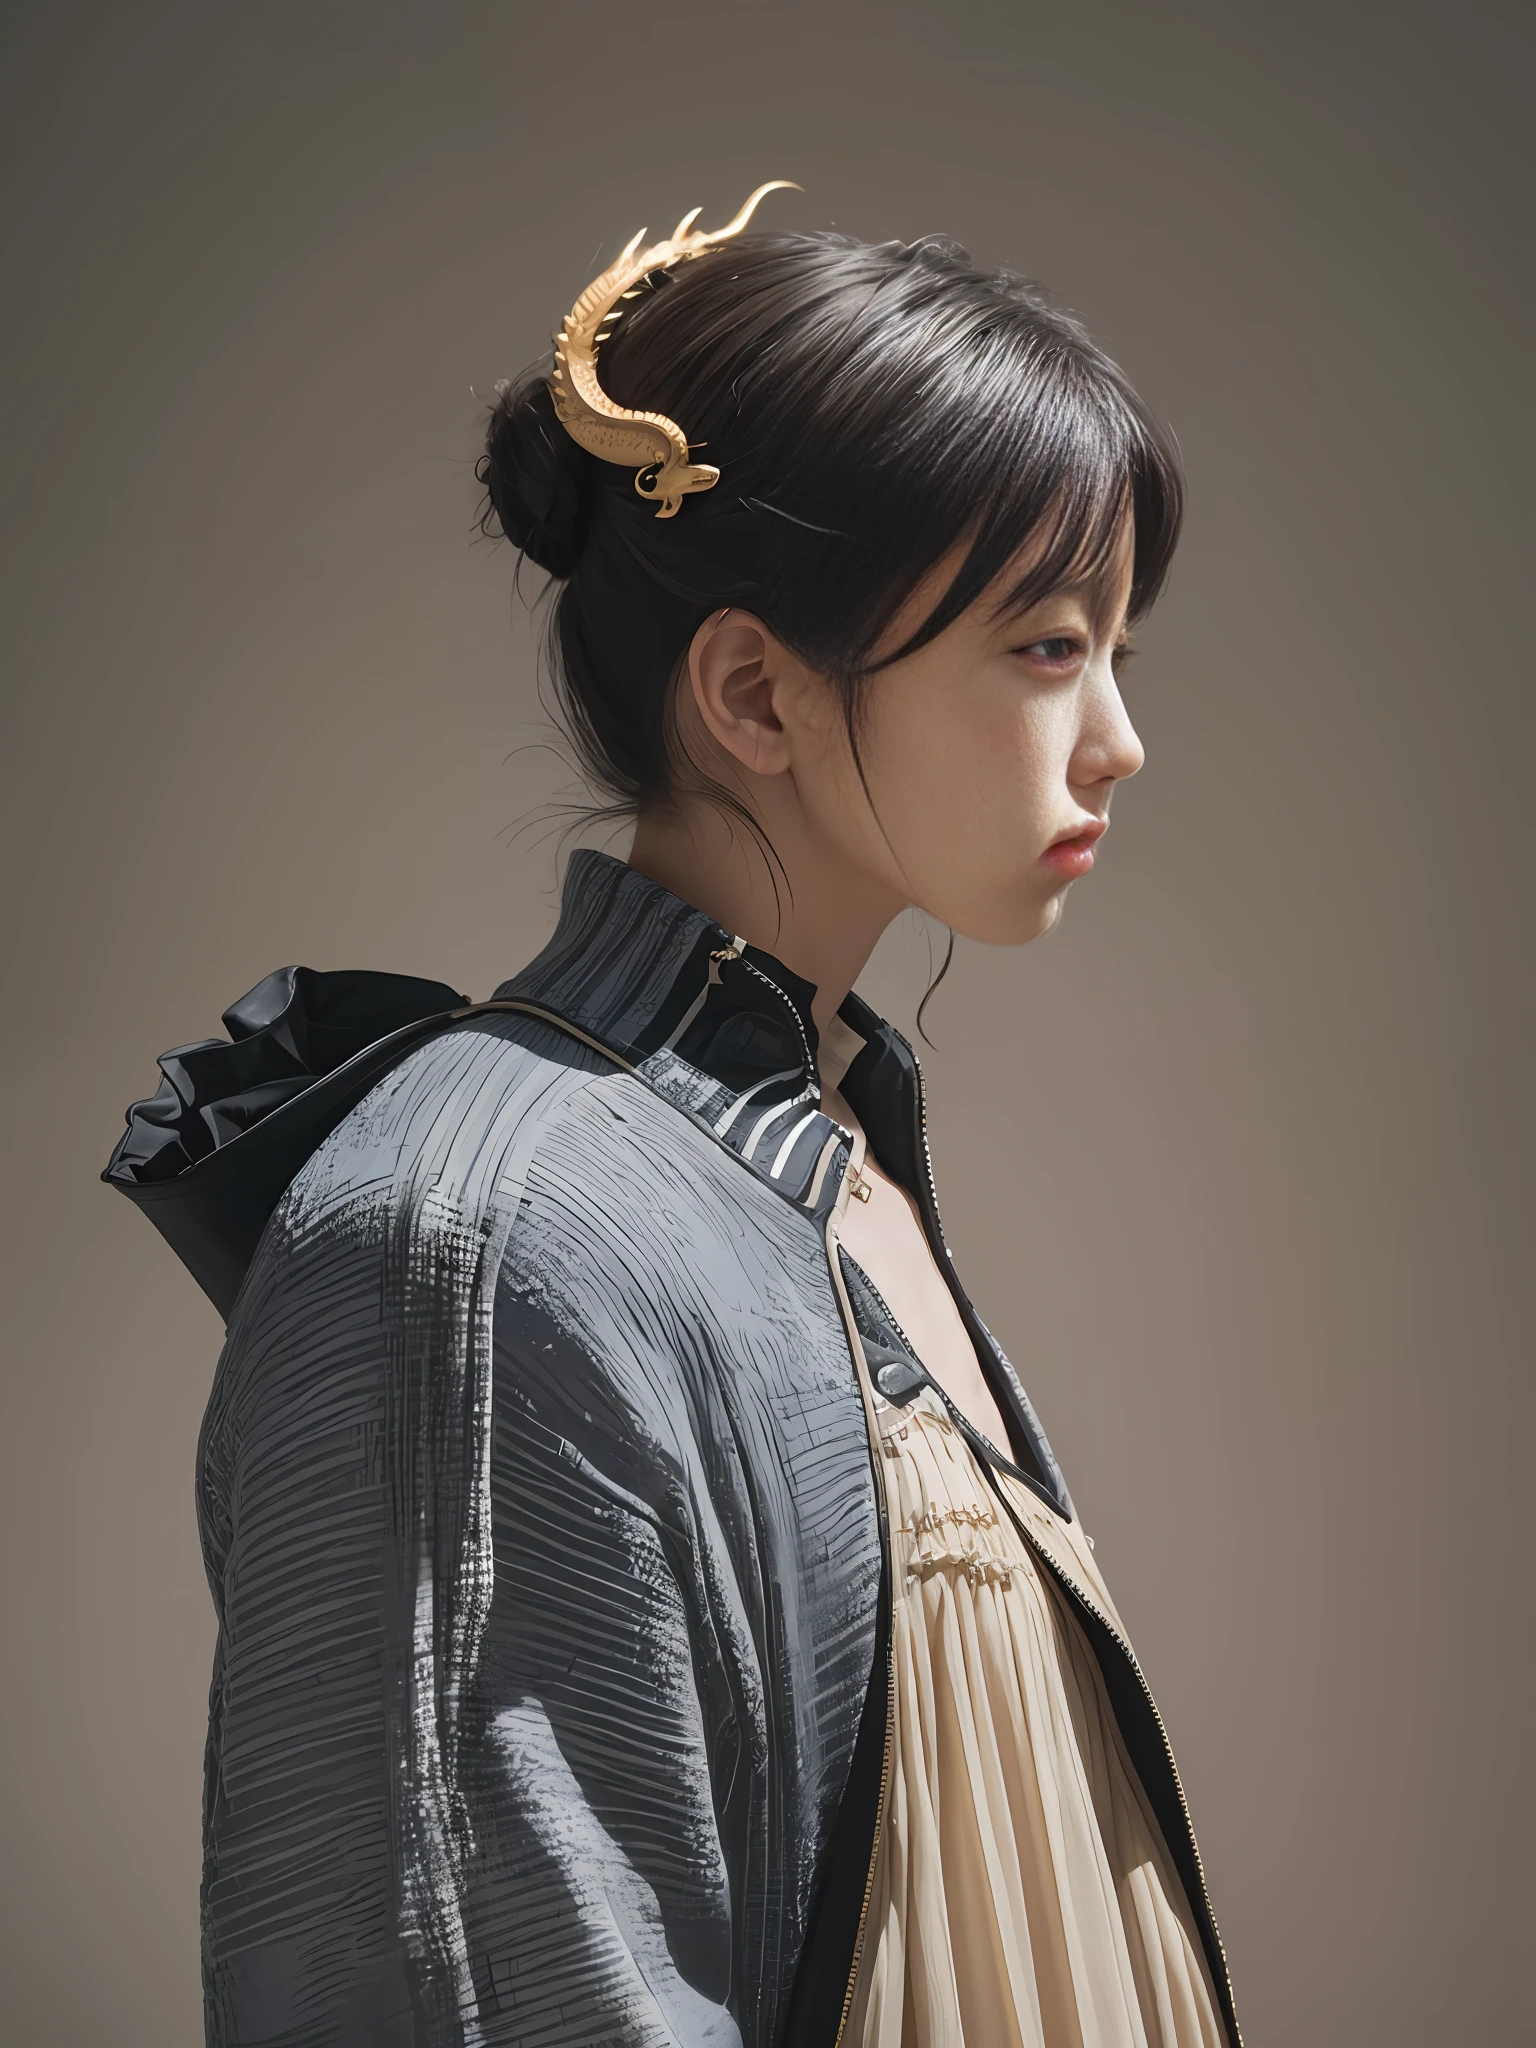 模特身着 Balenciaga 服装的迷人侧影, 它们的影子投射出神秘的中国龙轮廓. 为 Dazed 拍摄 & Jamie Hawkesworth 的困惑, 探索光与影的相互作用——ar 9:16 50 --风格原始--s 2